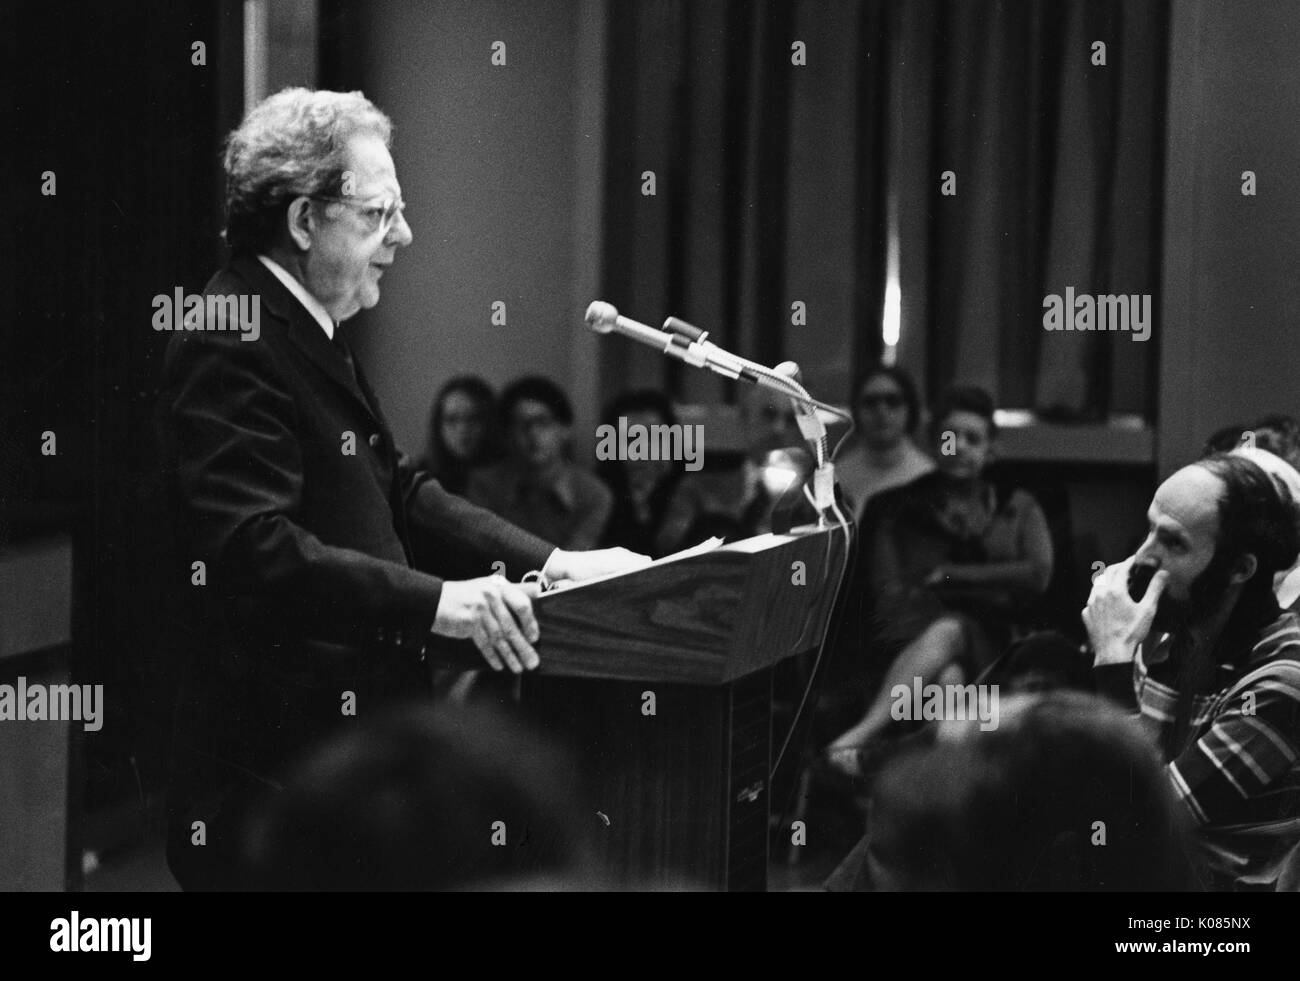 Trois-quarts portrait d'auteur Northrup Frye, debout derrière un podium en bois et de faire un discours à un public, portant un costume sombre et des lunettes, avec une grave expression du visage, les deux mains fermement pressé sur le podium, 1972. Banque D'Images